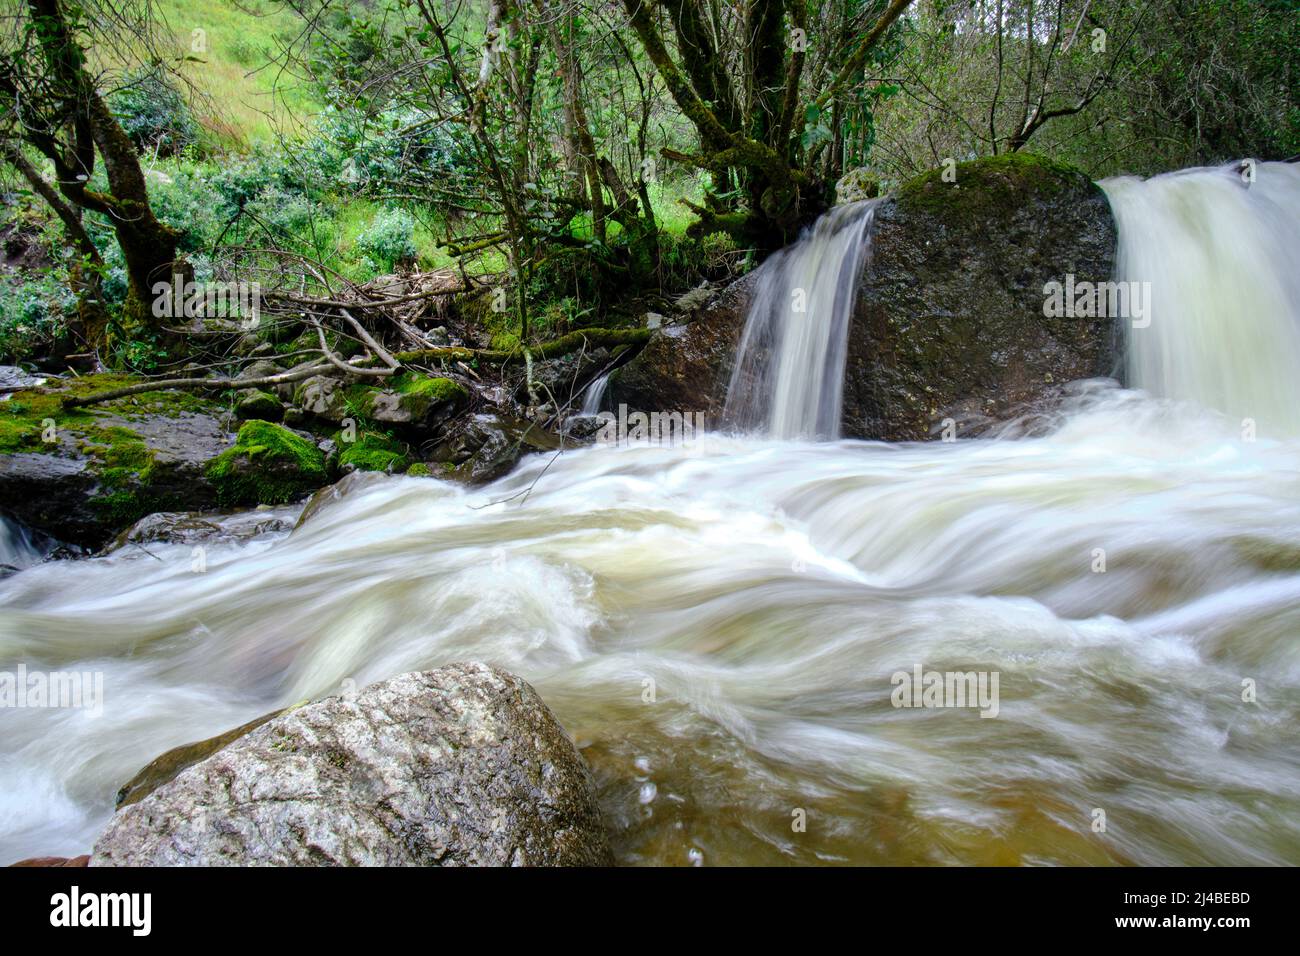 Schöne Landschaft des interandischen Waldes, wo ein Bach aus Wasser fließt, der Wasserfälle und einen kleinen Fluss bildet. Stockfoto